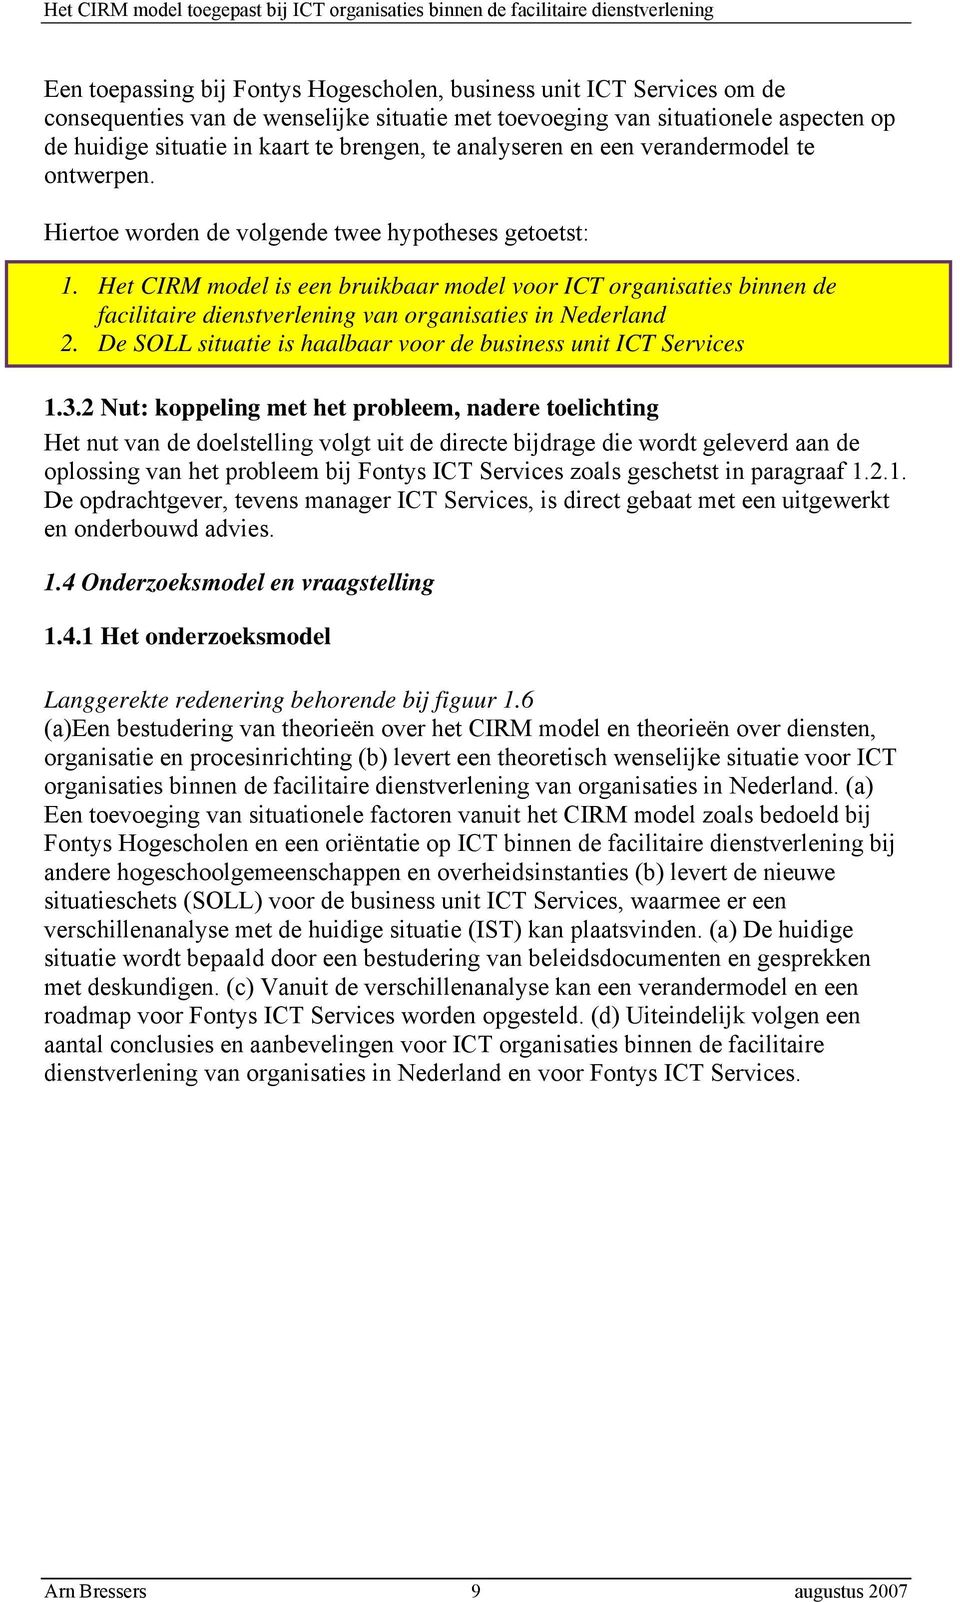 Het CIRM model is een bruikbaar model voor ICT organisaties binnen de facilitaire dienstverlening van organisaties in Nederland 2. De SOLL situatie is haalbaar voor de business unit ICT Services 1.3.